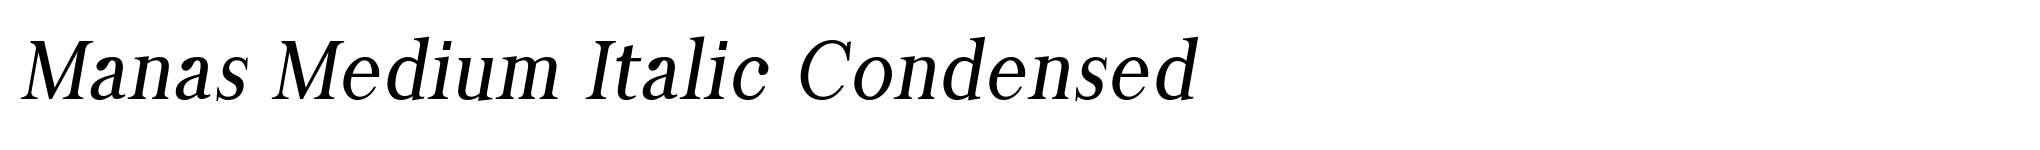 Manas Medium Italic Condensed image